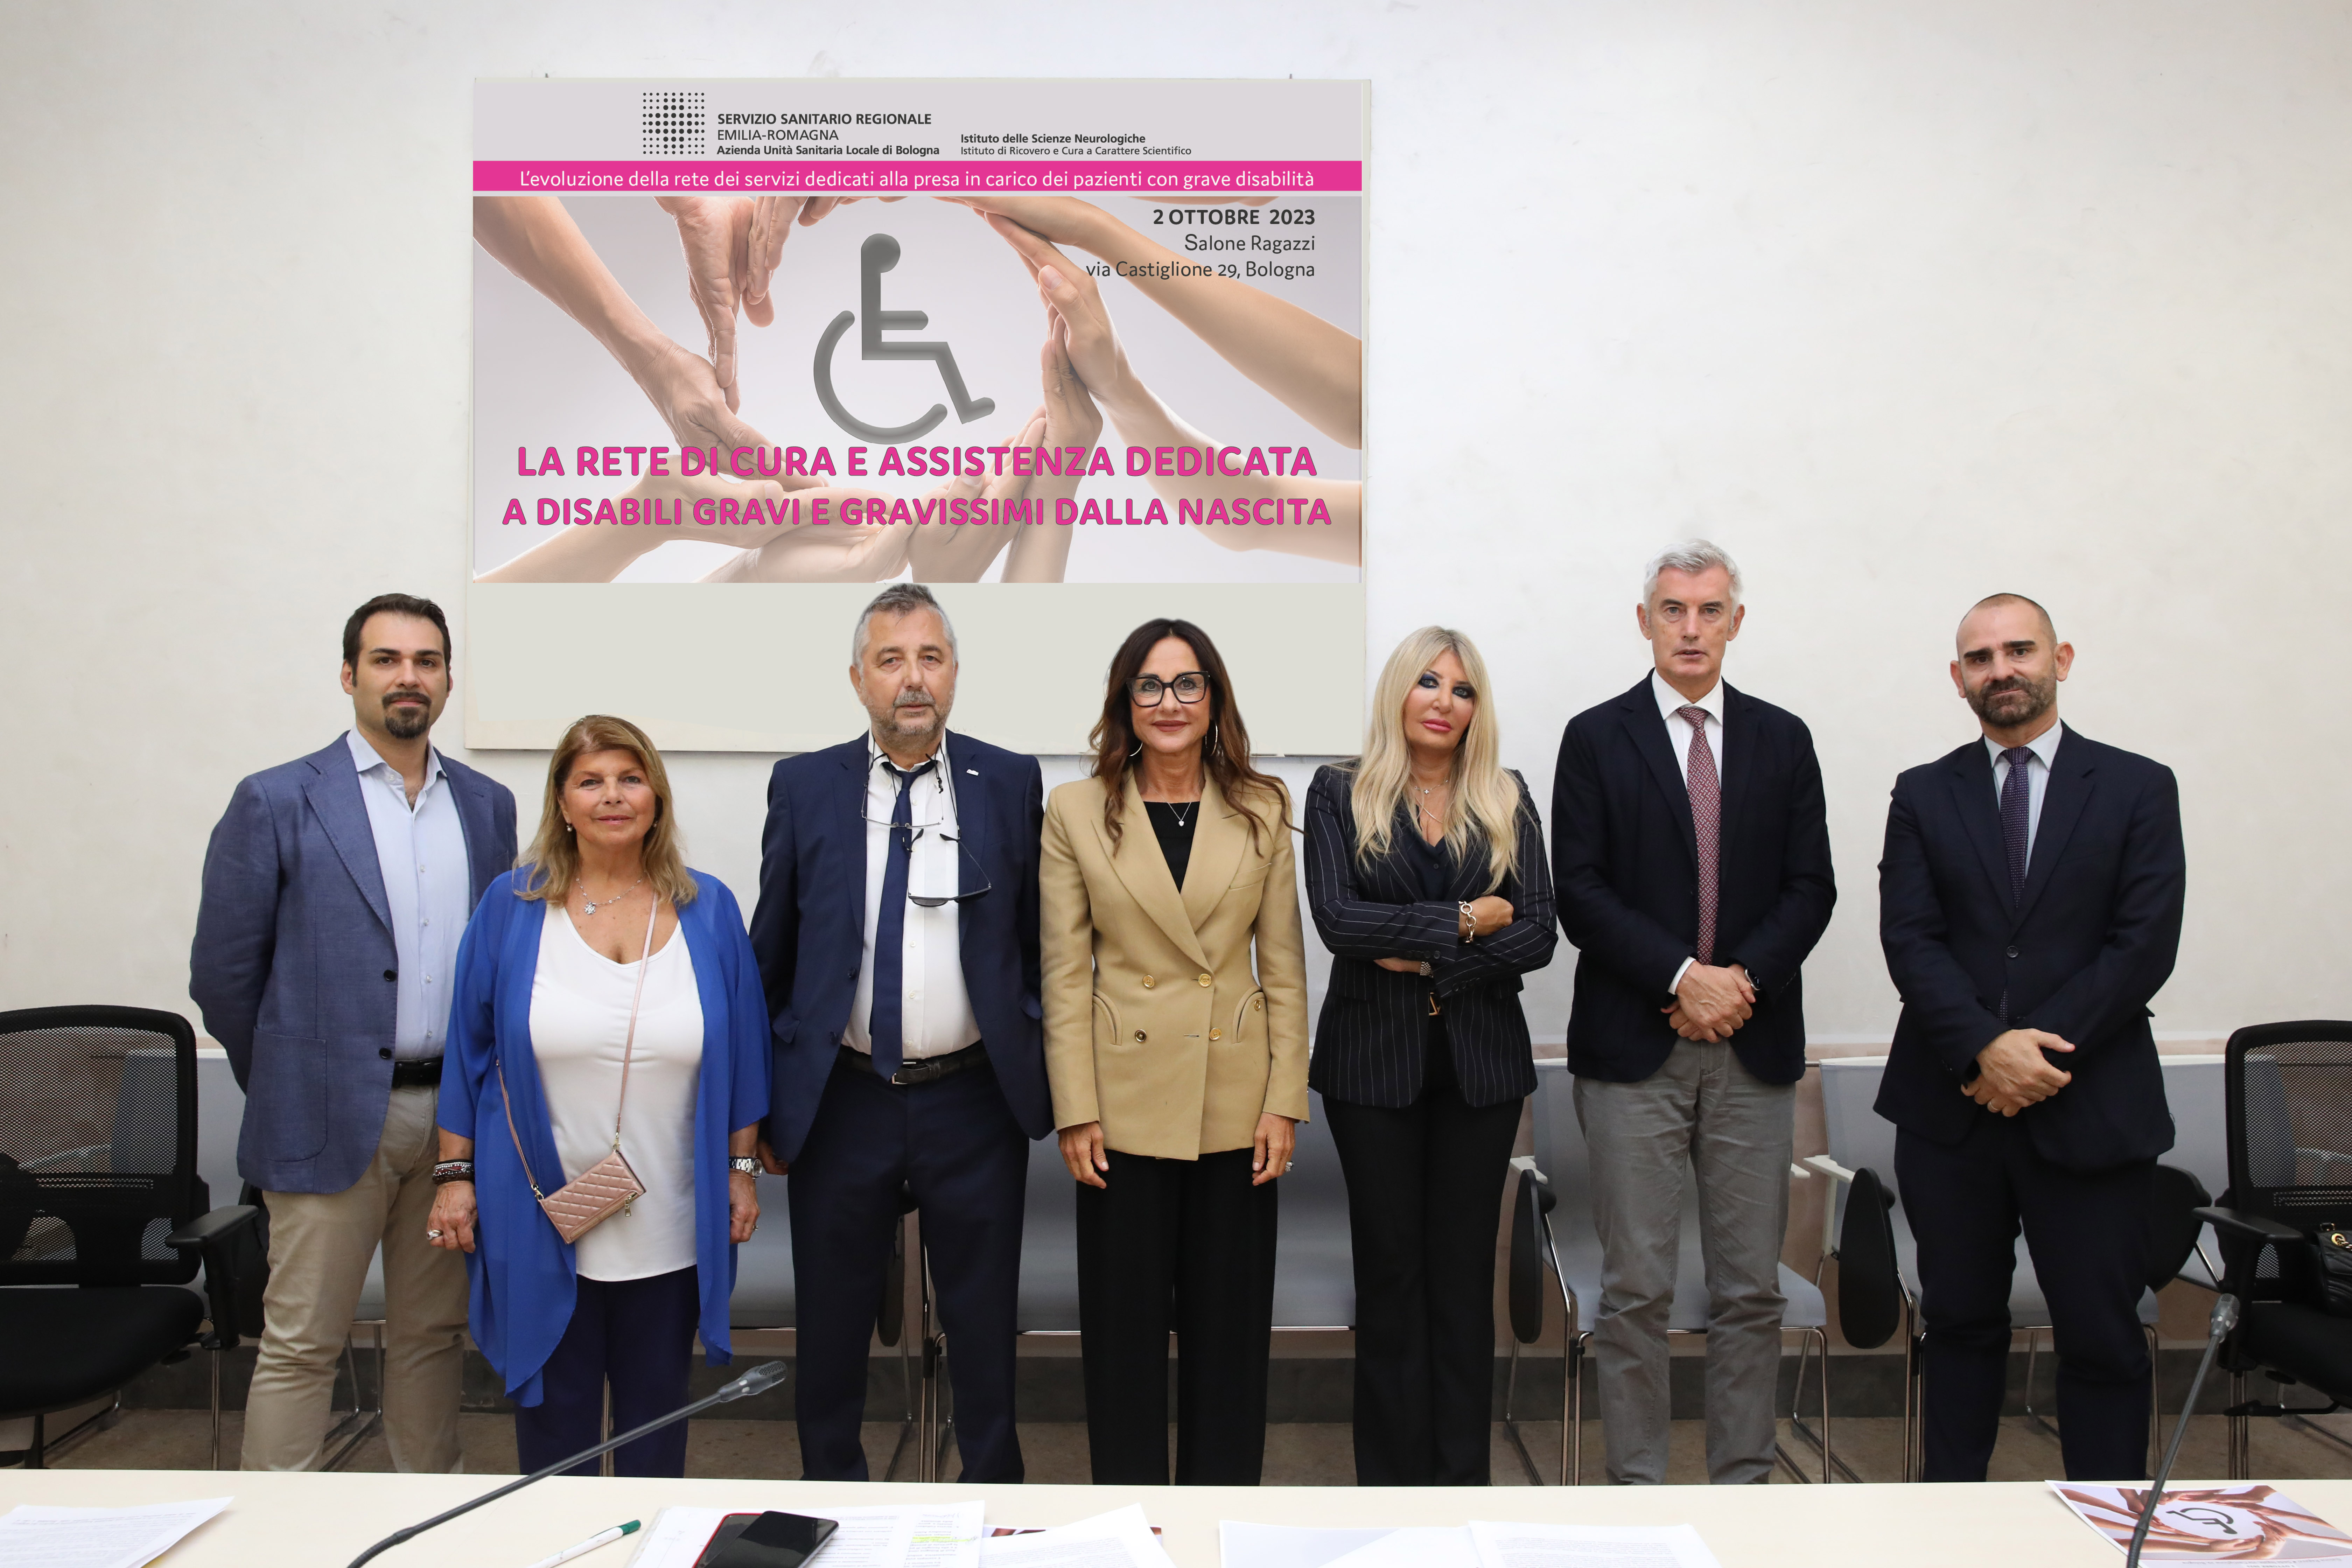 L'Azienda USL di Bologna rinnova e investe sulla rete di cura e assistenza dedicata a disabili gravi e gravissimi dalla nascita